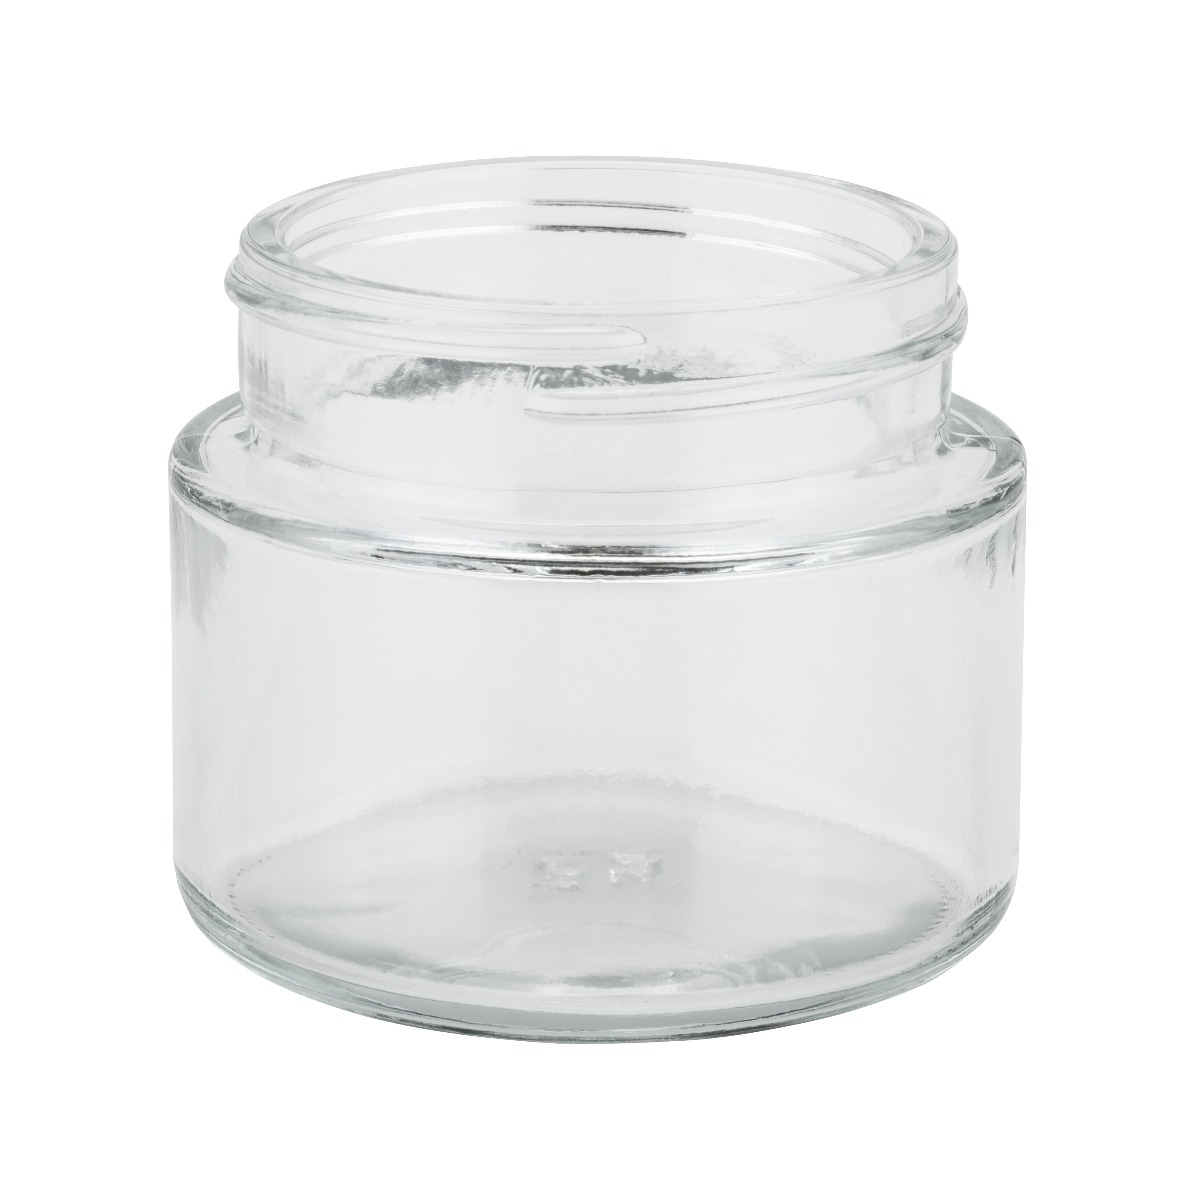 Flint glass straight sided jar